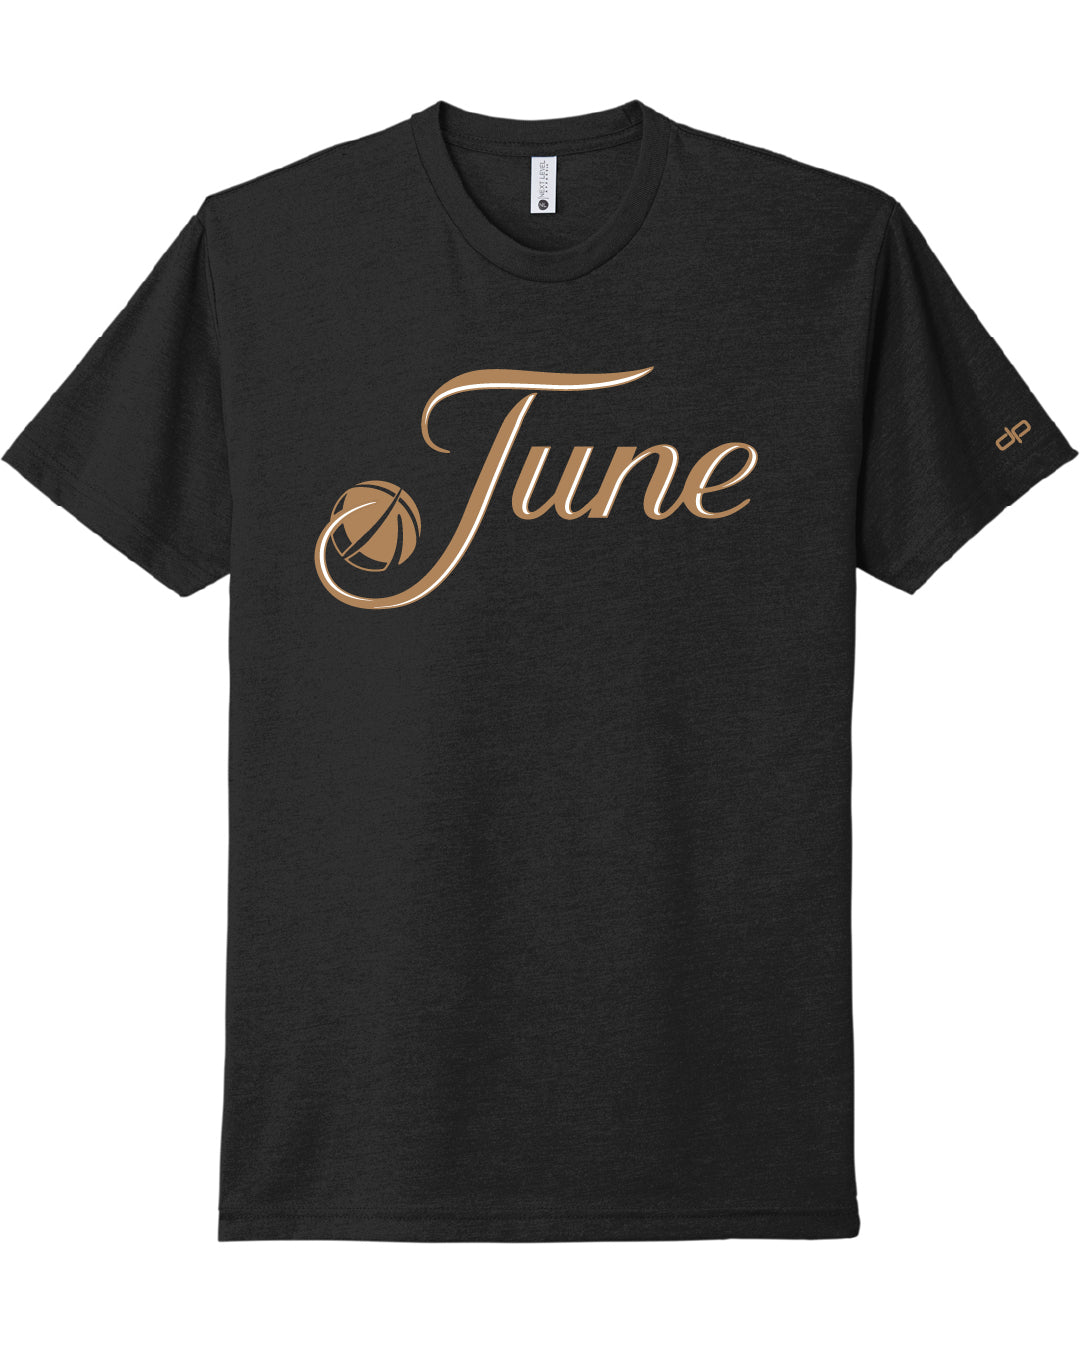 June T-Shirt